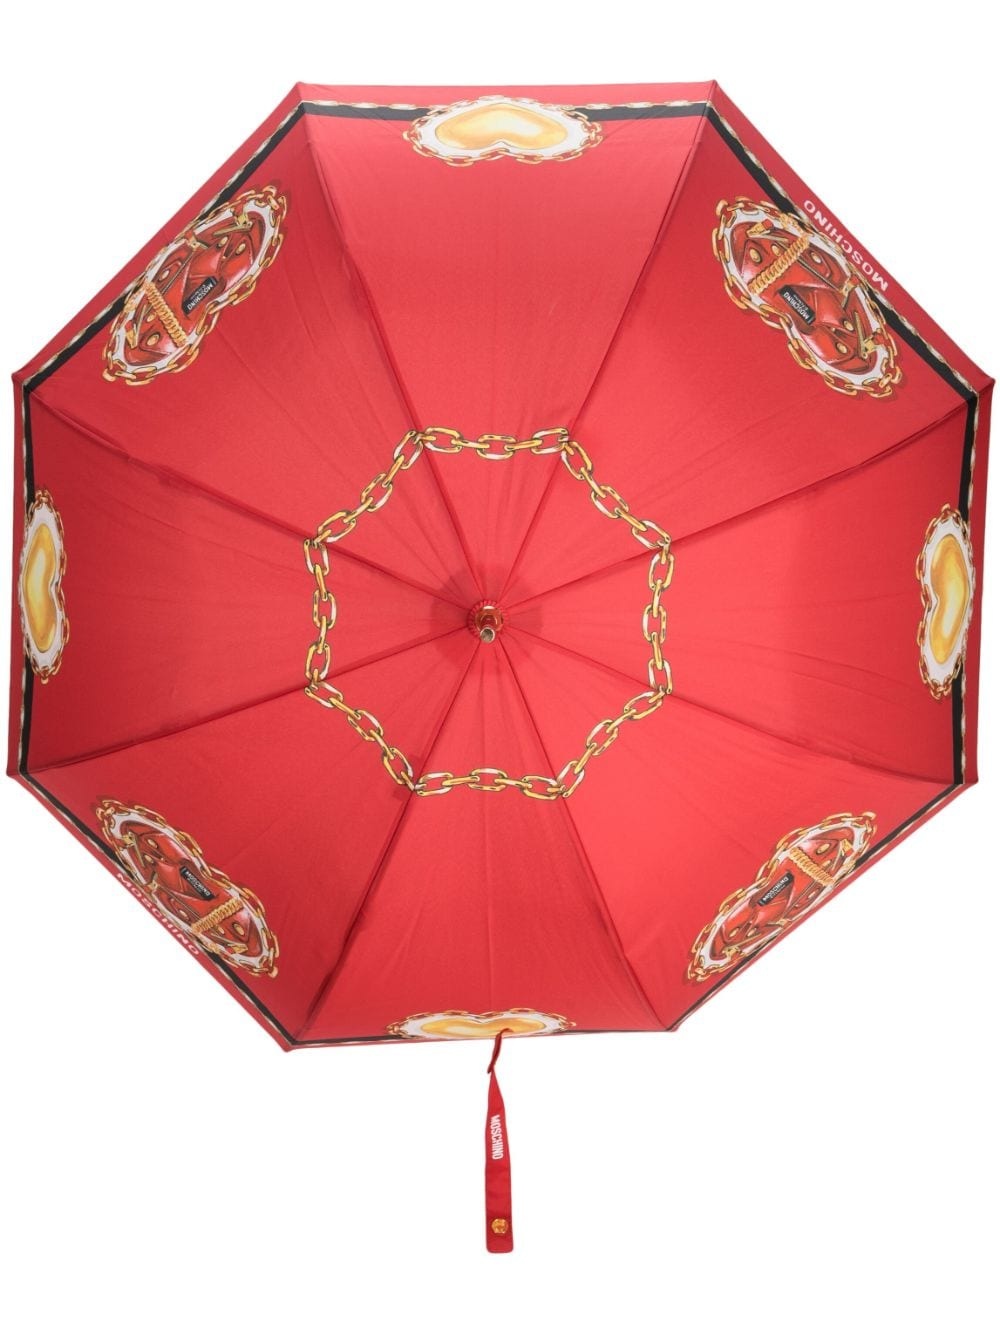 heart-print umbrella - 1